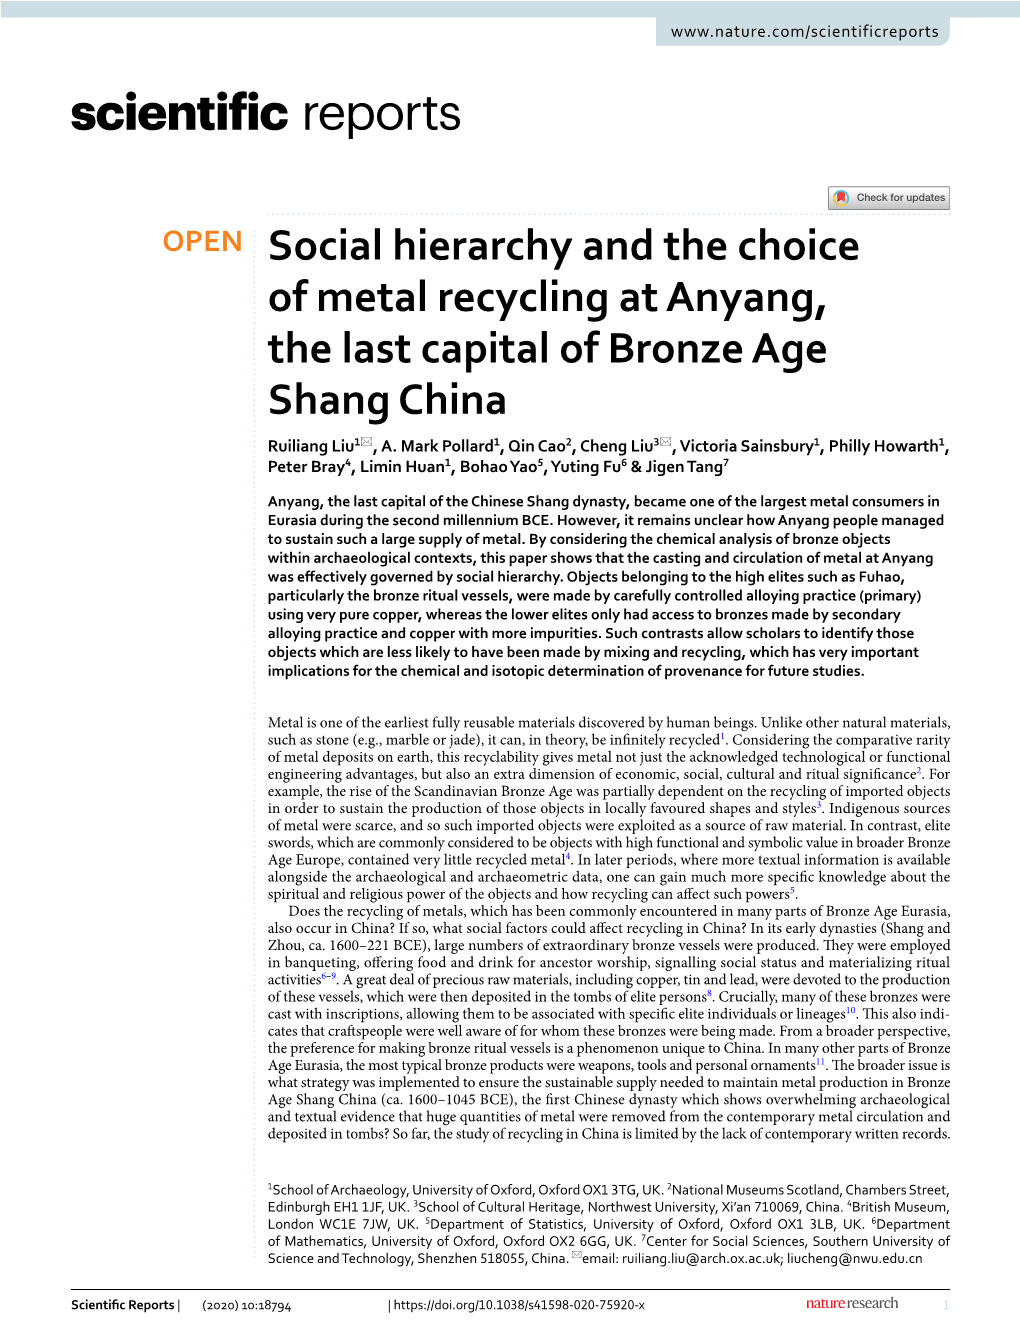 Social Hierarchy and the Choice of Metal Recycling at Anyang, the Last Capital of Bronze Age Shang China Ruiliang Liu1*, A